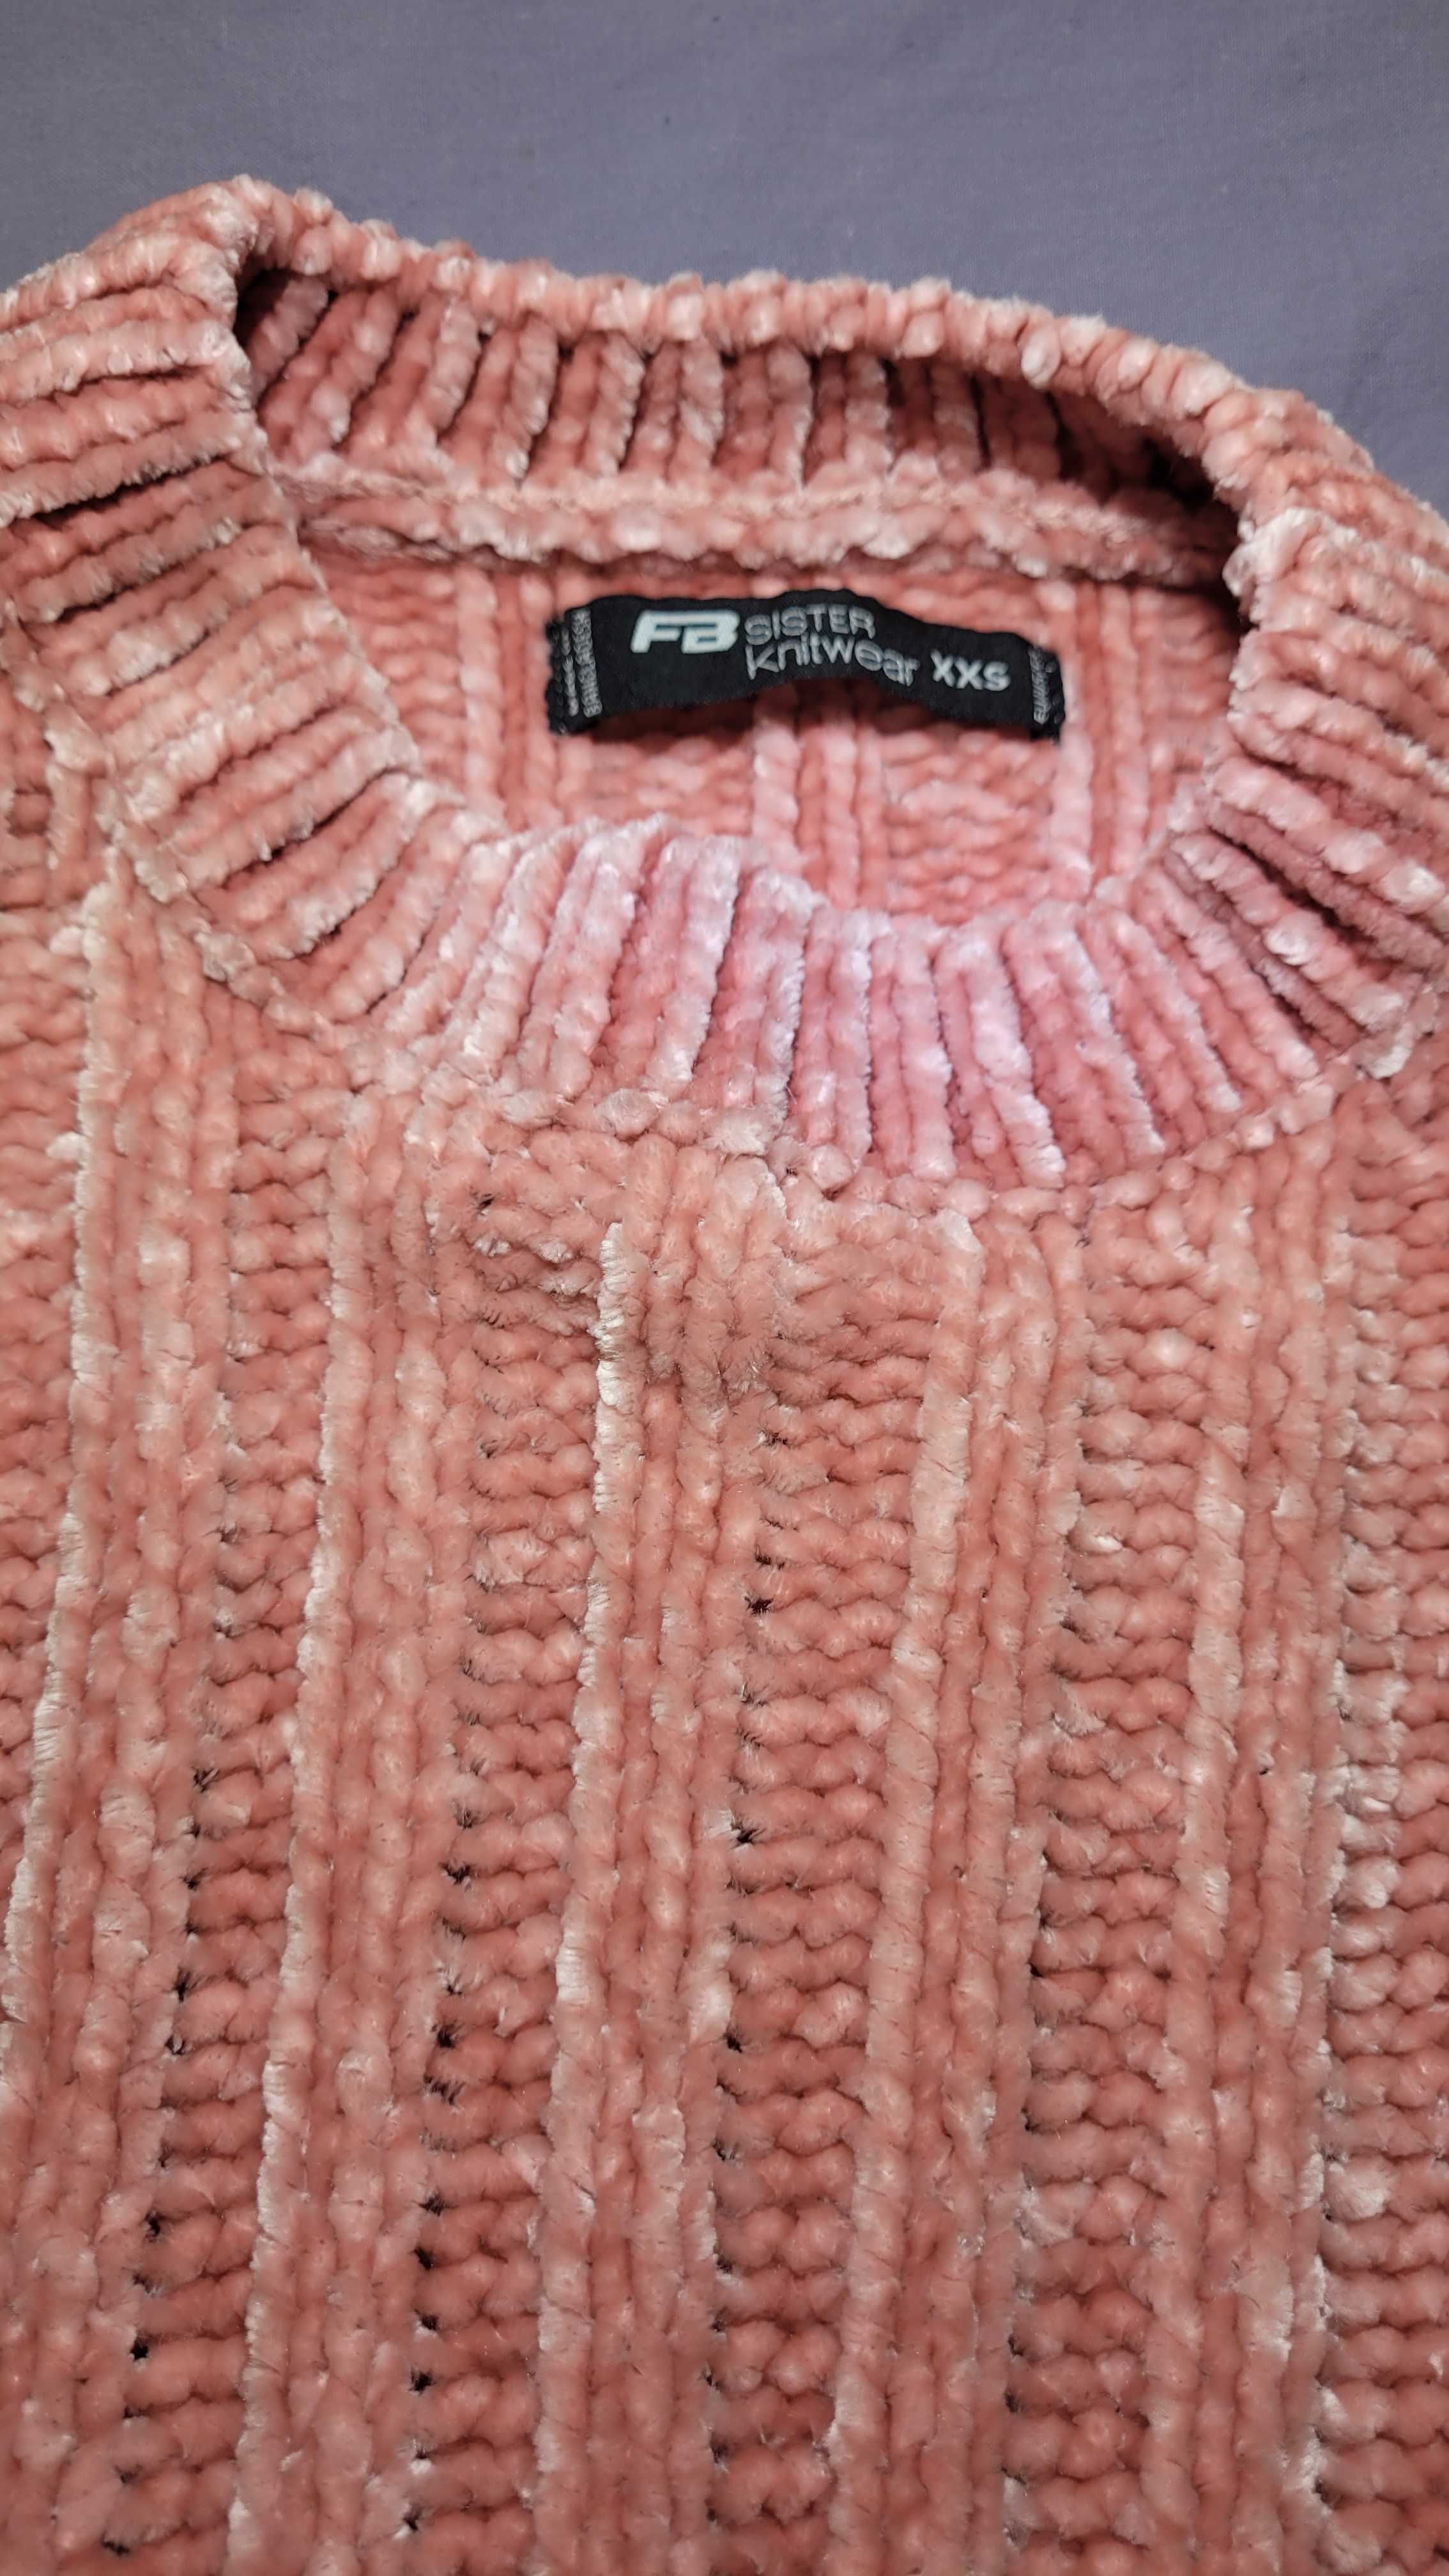 Sweter szenilowy różowy pudrowy róż ciepły XXS 32 FBSister